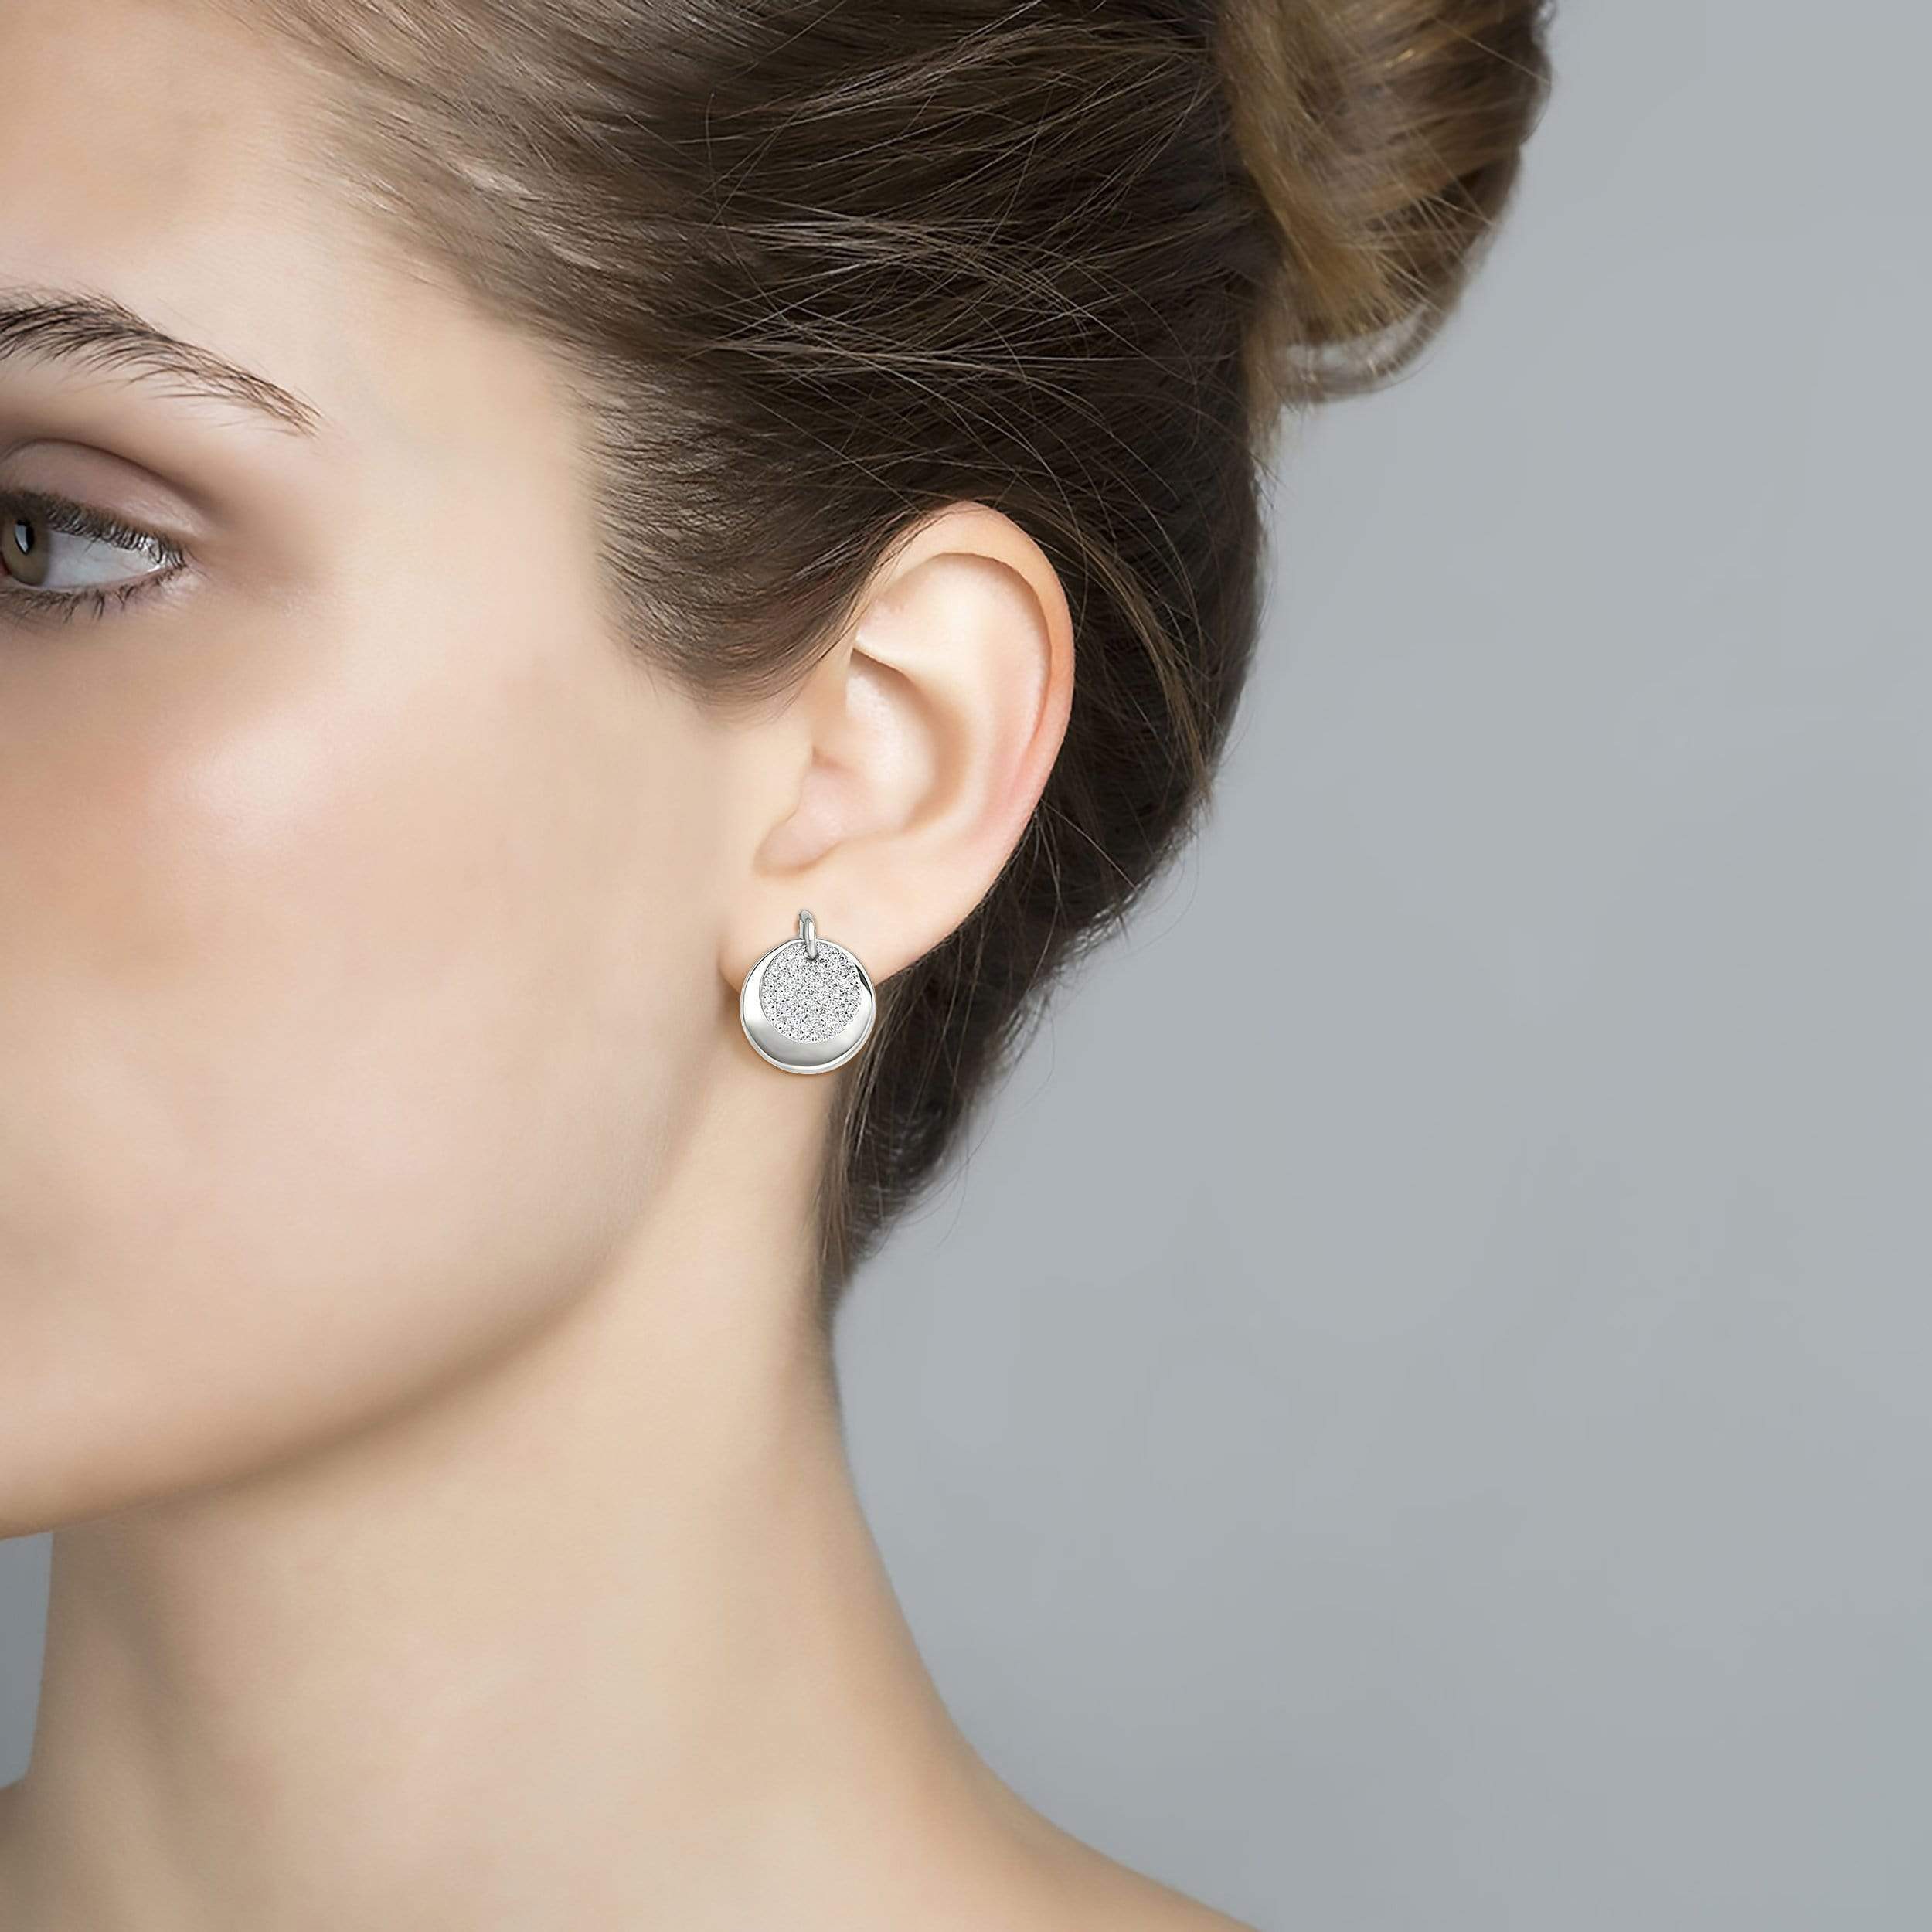 Lynora Jewellery Earring Sterling Silver Eclipse Earrings Luxe Sterling Silver